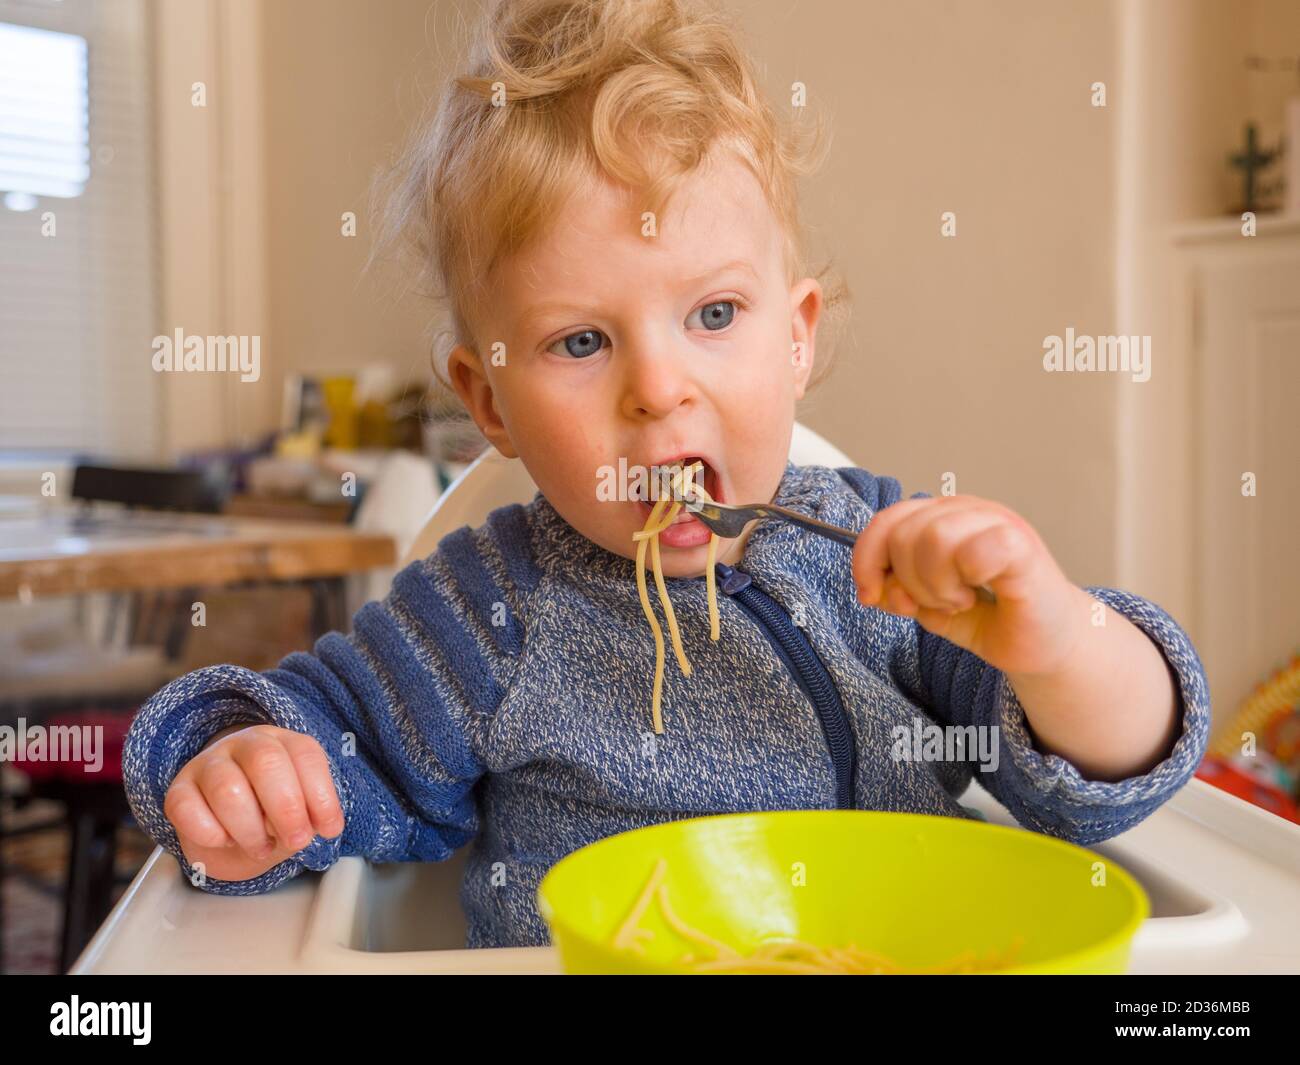 Ein Jahr alter kleiner Junge, der Spaghetti mit Besteck isst Zu Hause Stockfoto